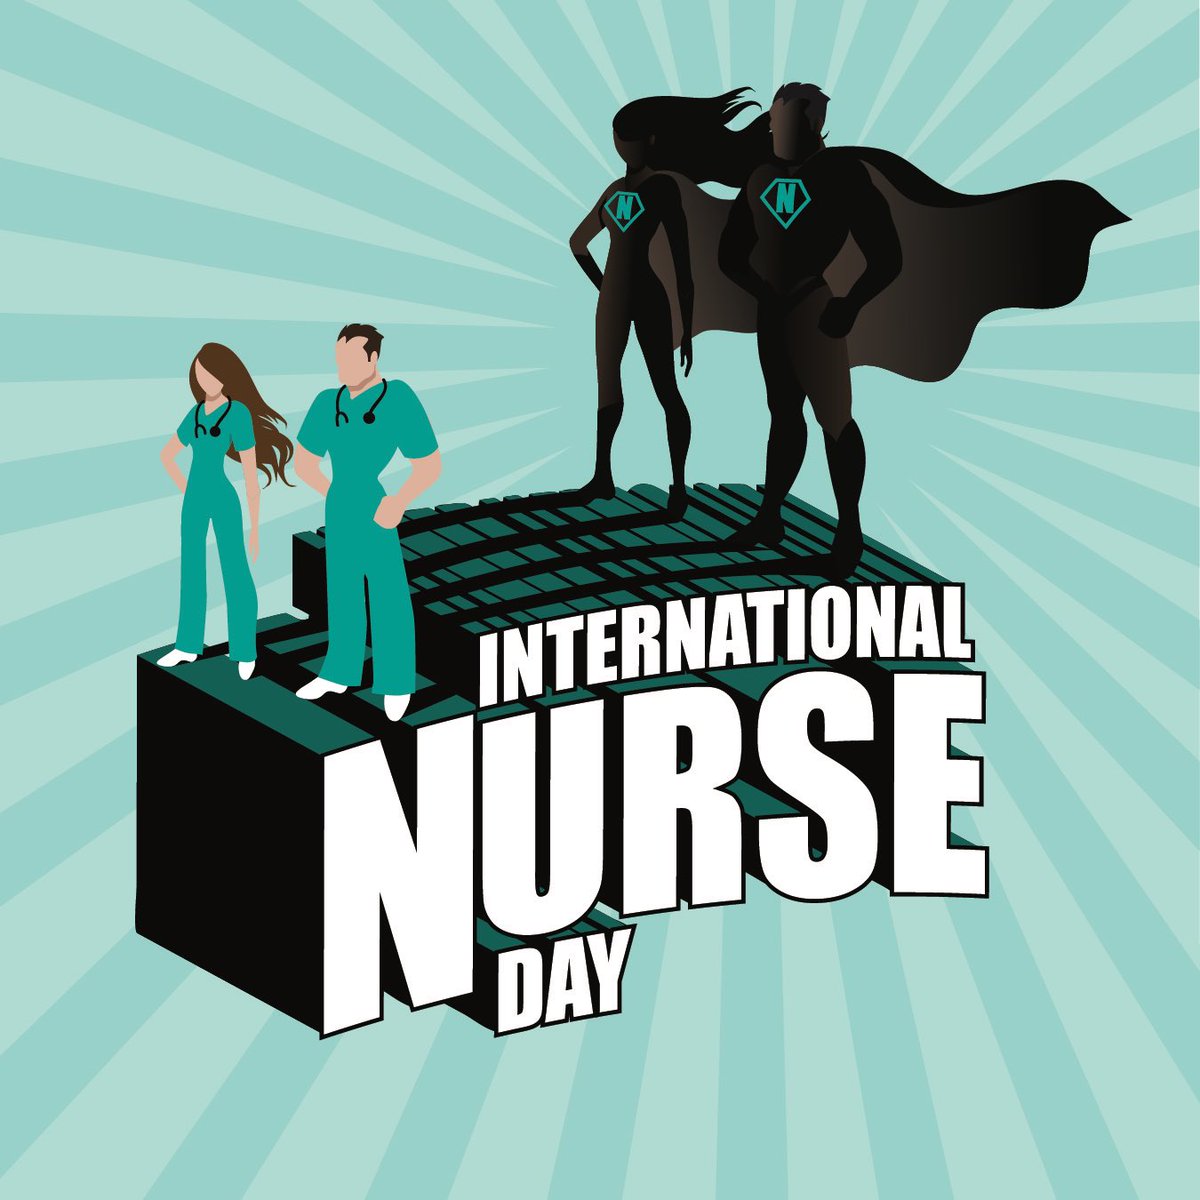 كيف الاستعدادات لليوم العالمي للتمريض 🤗

#NursingWeek2024